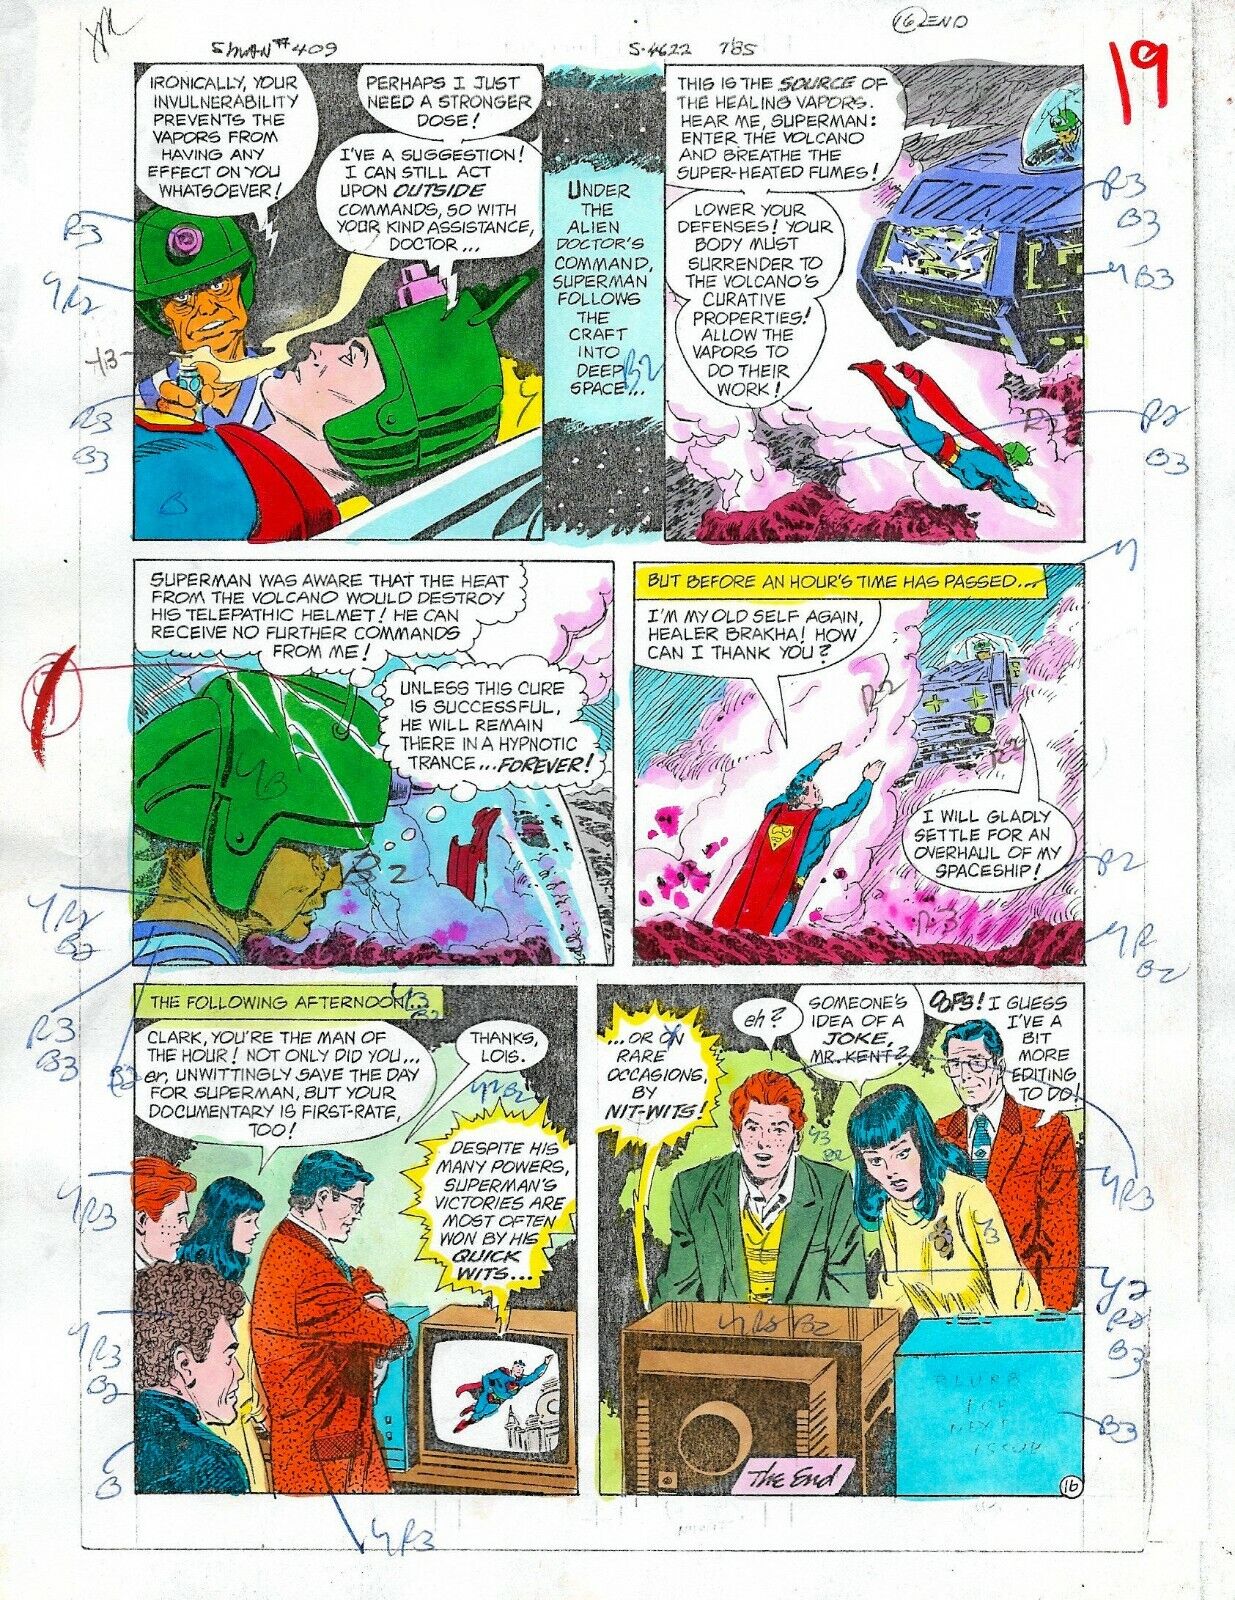 Original 1985 Superman 409 page 19 DC Comics color guide art colorist\'s artwork